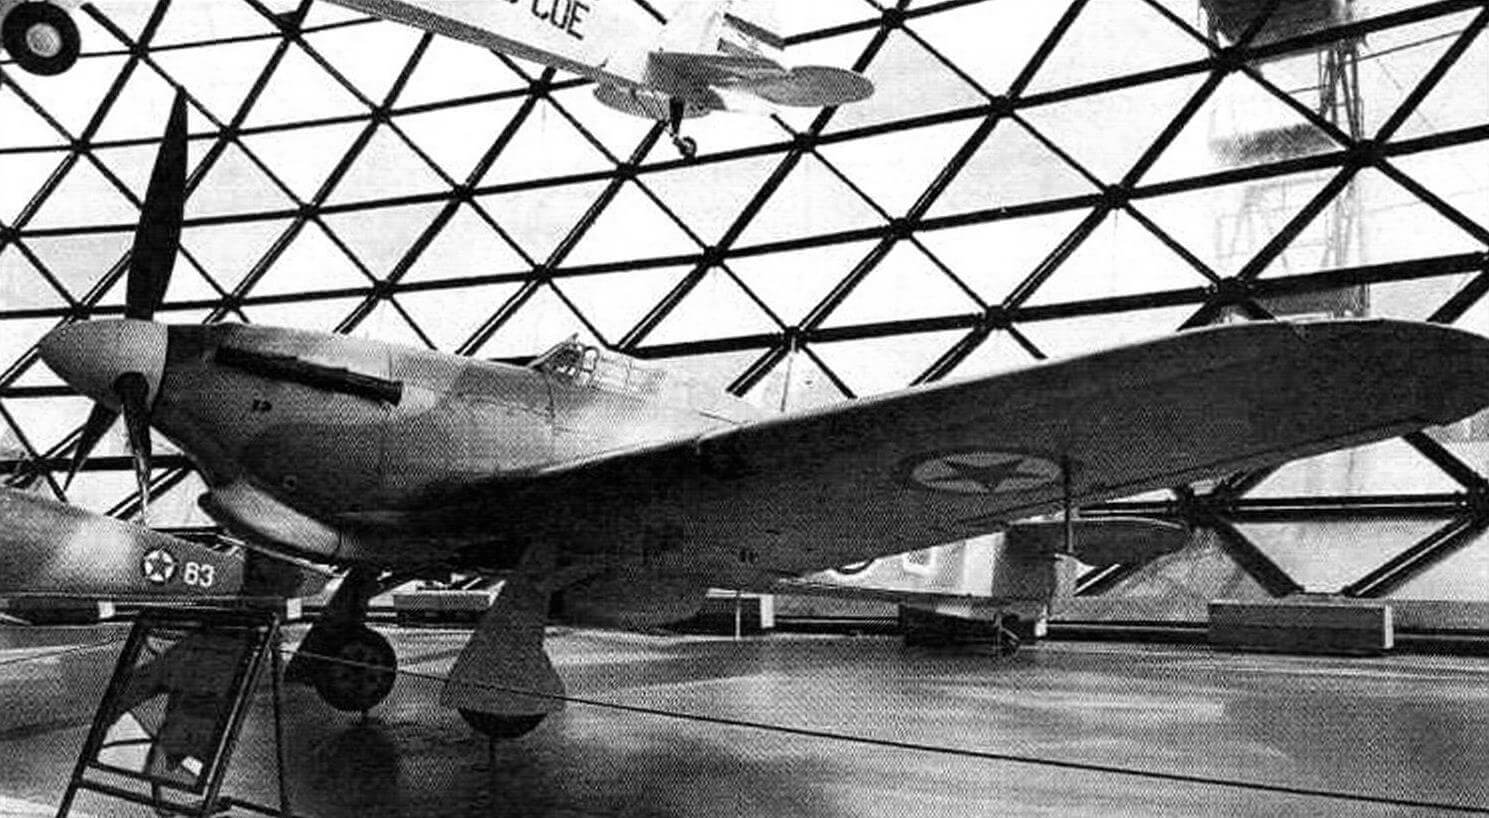 Ни одного из истребителей Hawker Hurricane Mk.l югославского производства не сохранилось, в музее представлен самолет поздней модификации Mk.IV, приобретенный у британского коллекционера